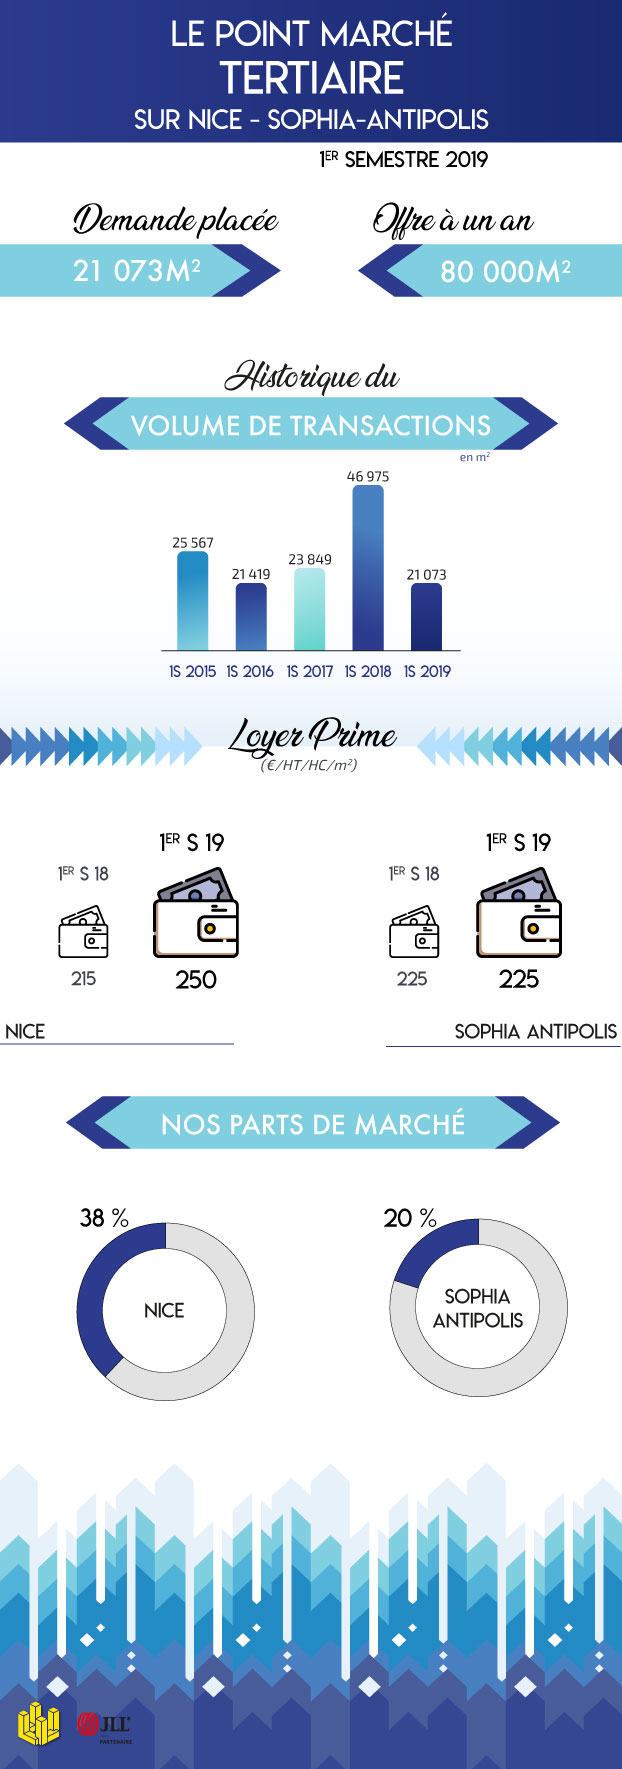 Les chiffres marché du premier semestre 2019 en immobilier tertiaire sur Nice et Sophia Antipolis